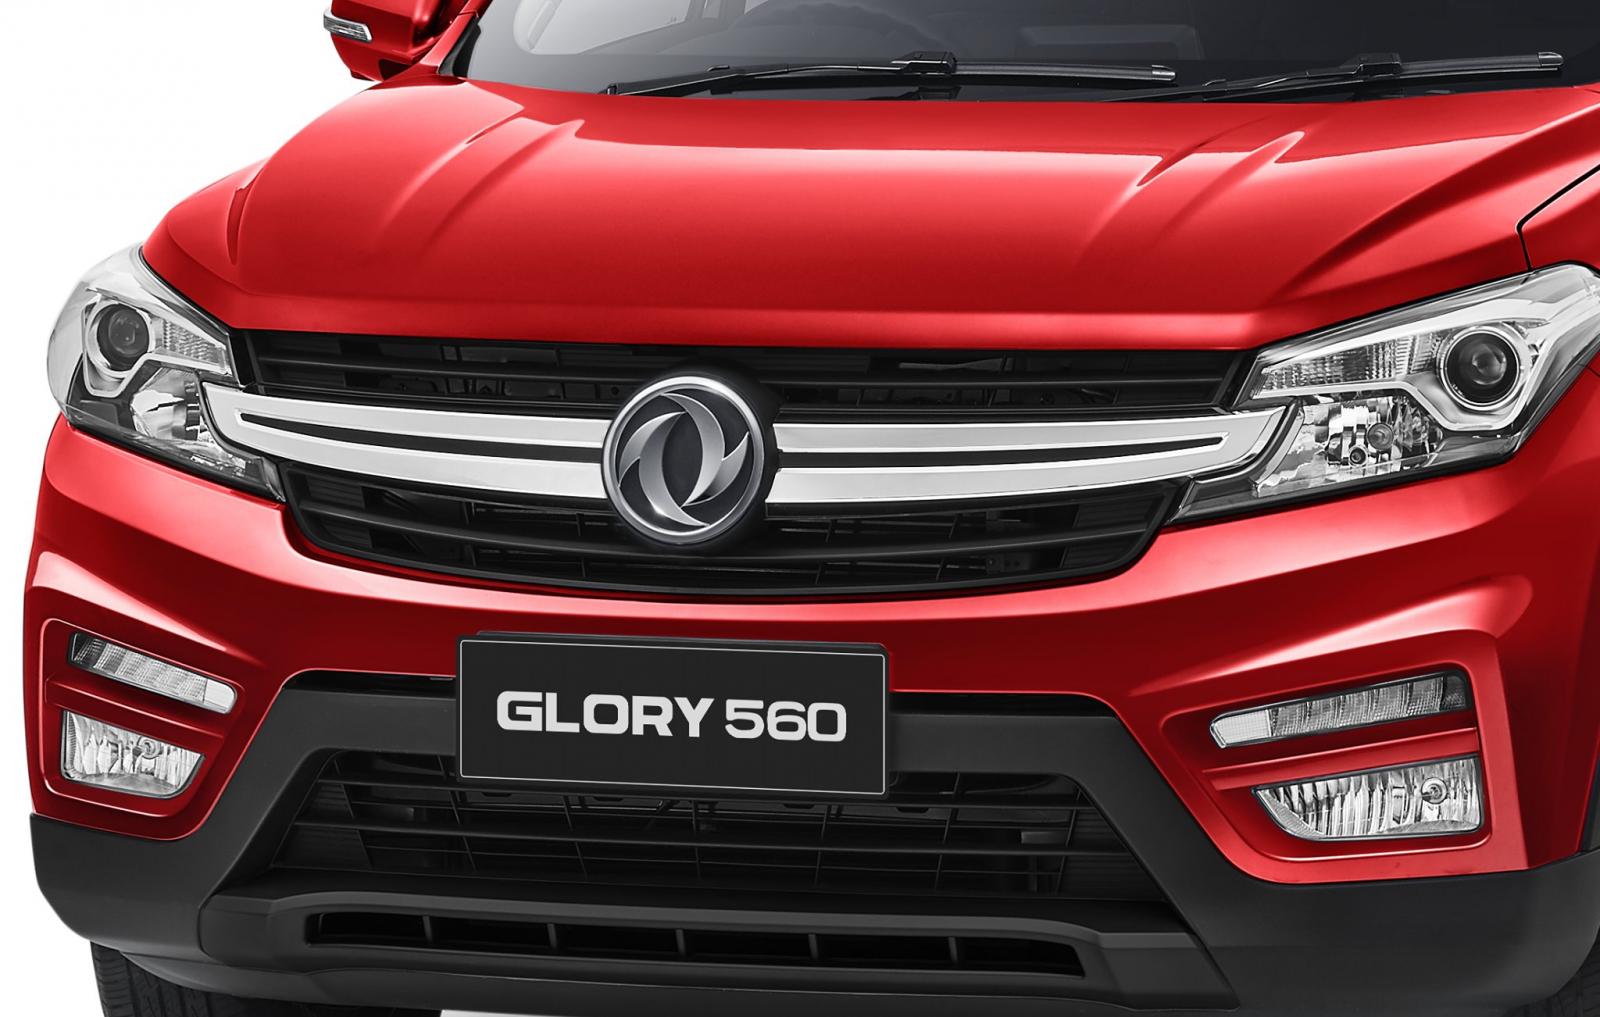 Hãng khác Xe du lịch Glory 560 2020 - DFSK glory 560 lắp ráp tại nhà máy Sokon Indonesia, sòng SUV có giá rẻ nhất Việt Nam